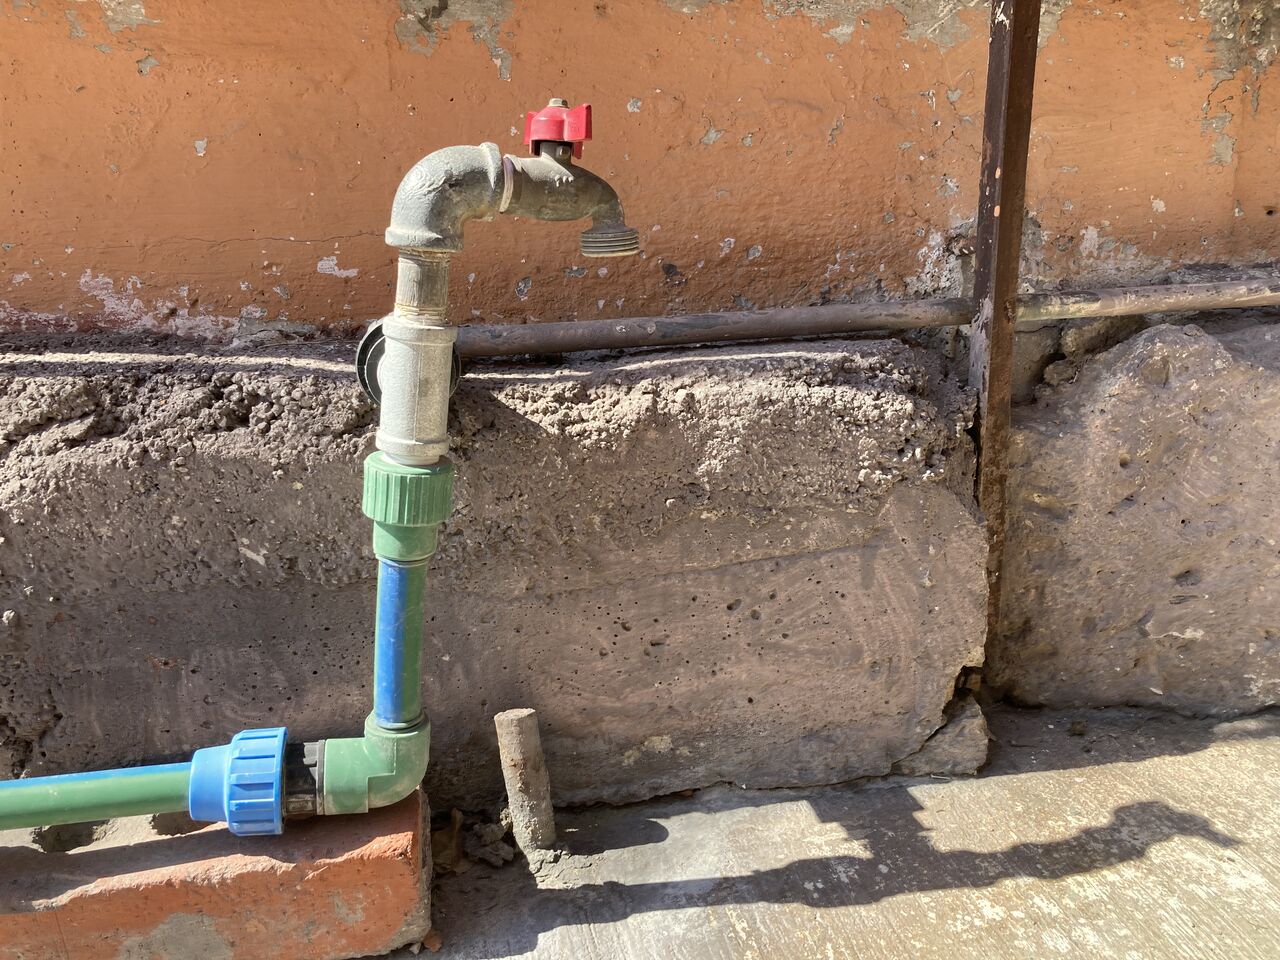 Analizan prohibir regar jardines por sequía en Monclova